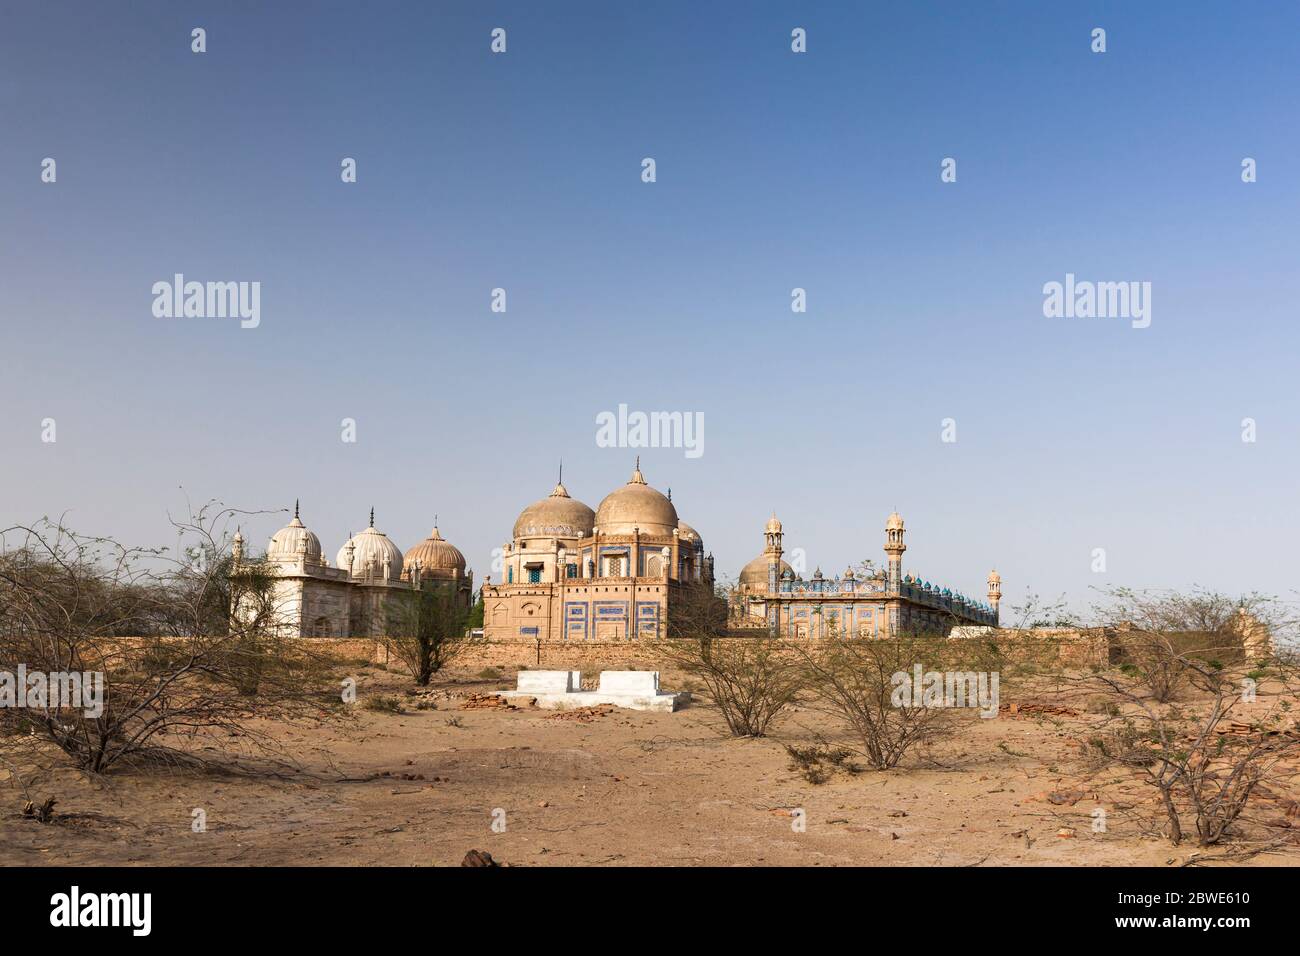 Royal Graveyard of Derawar Fort, Derawar, Bahawalpur district, Punjab Province, Pakistan, South Asia, Asia Stock Photo